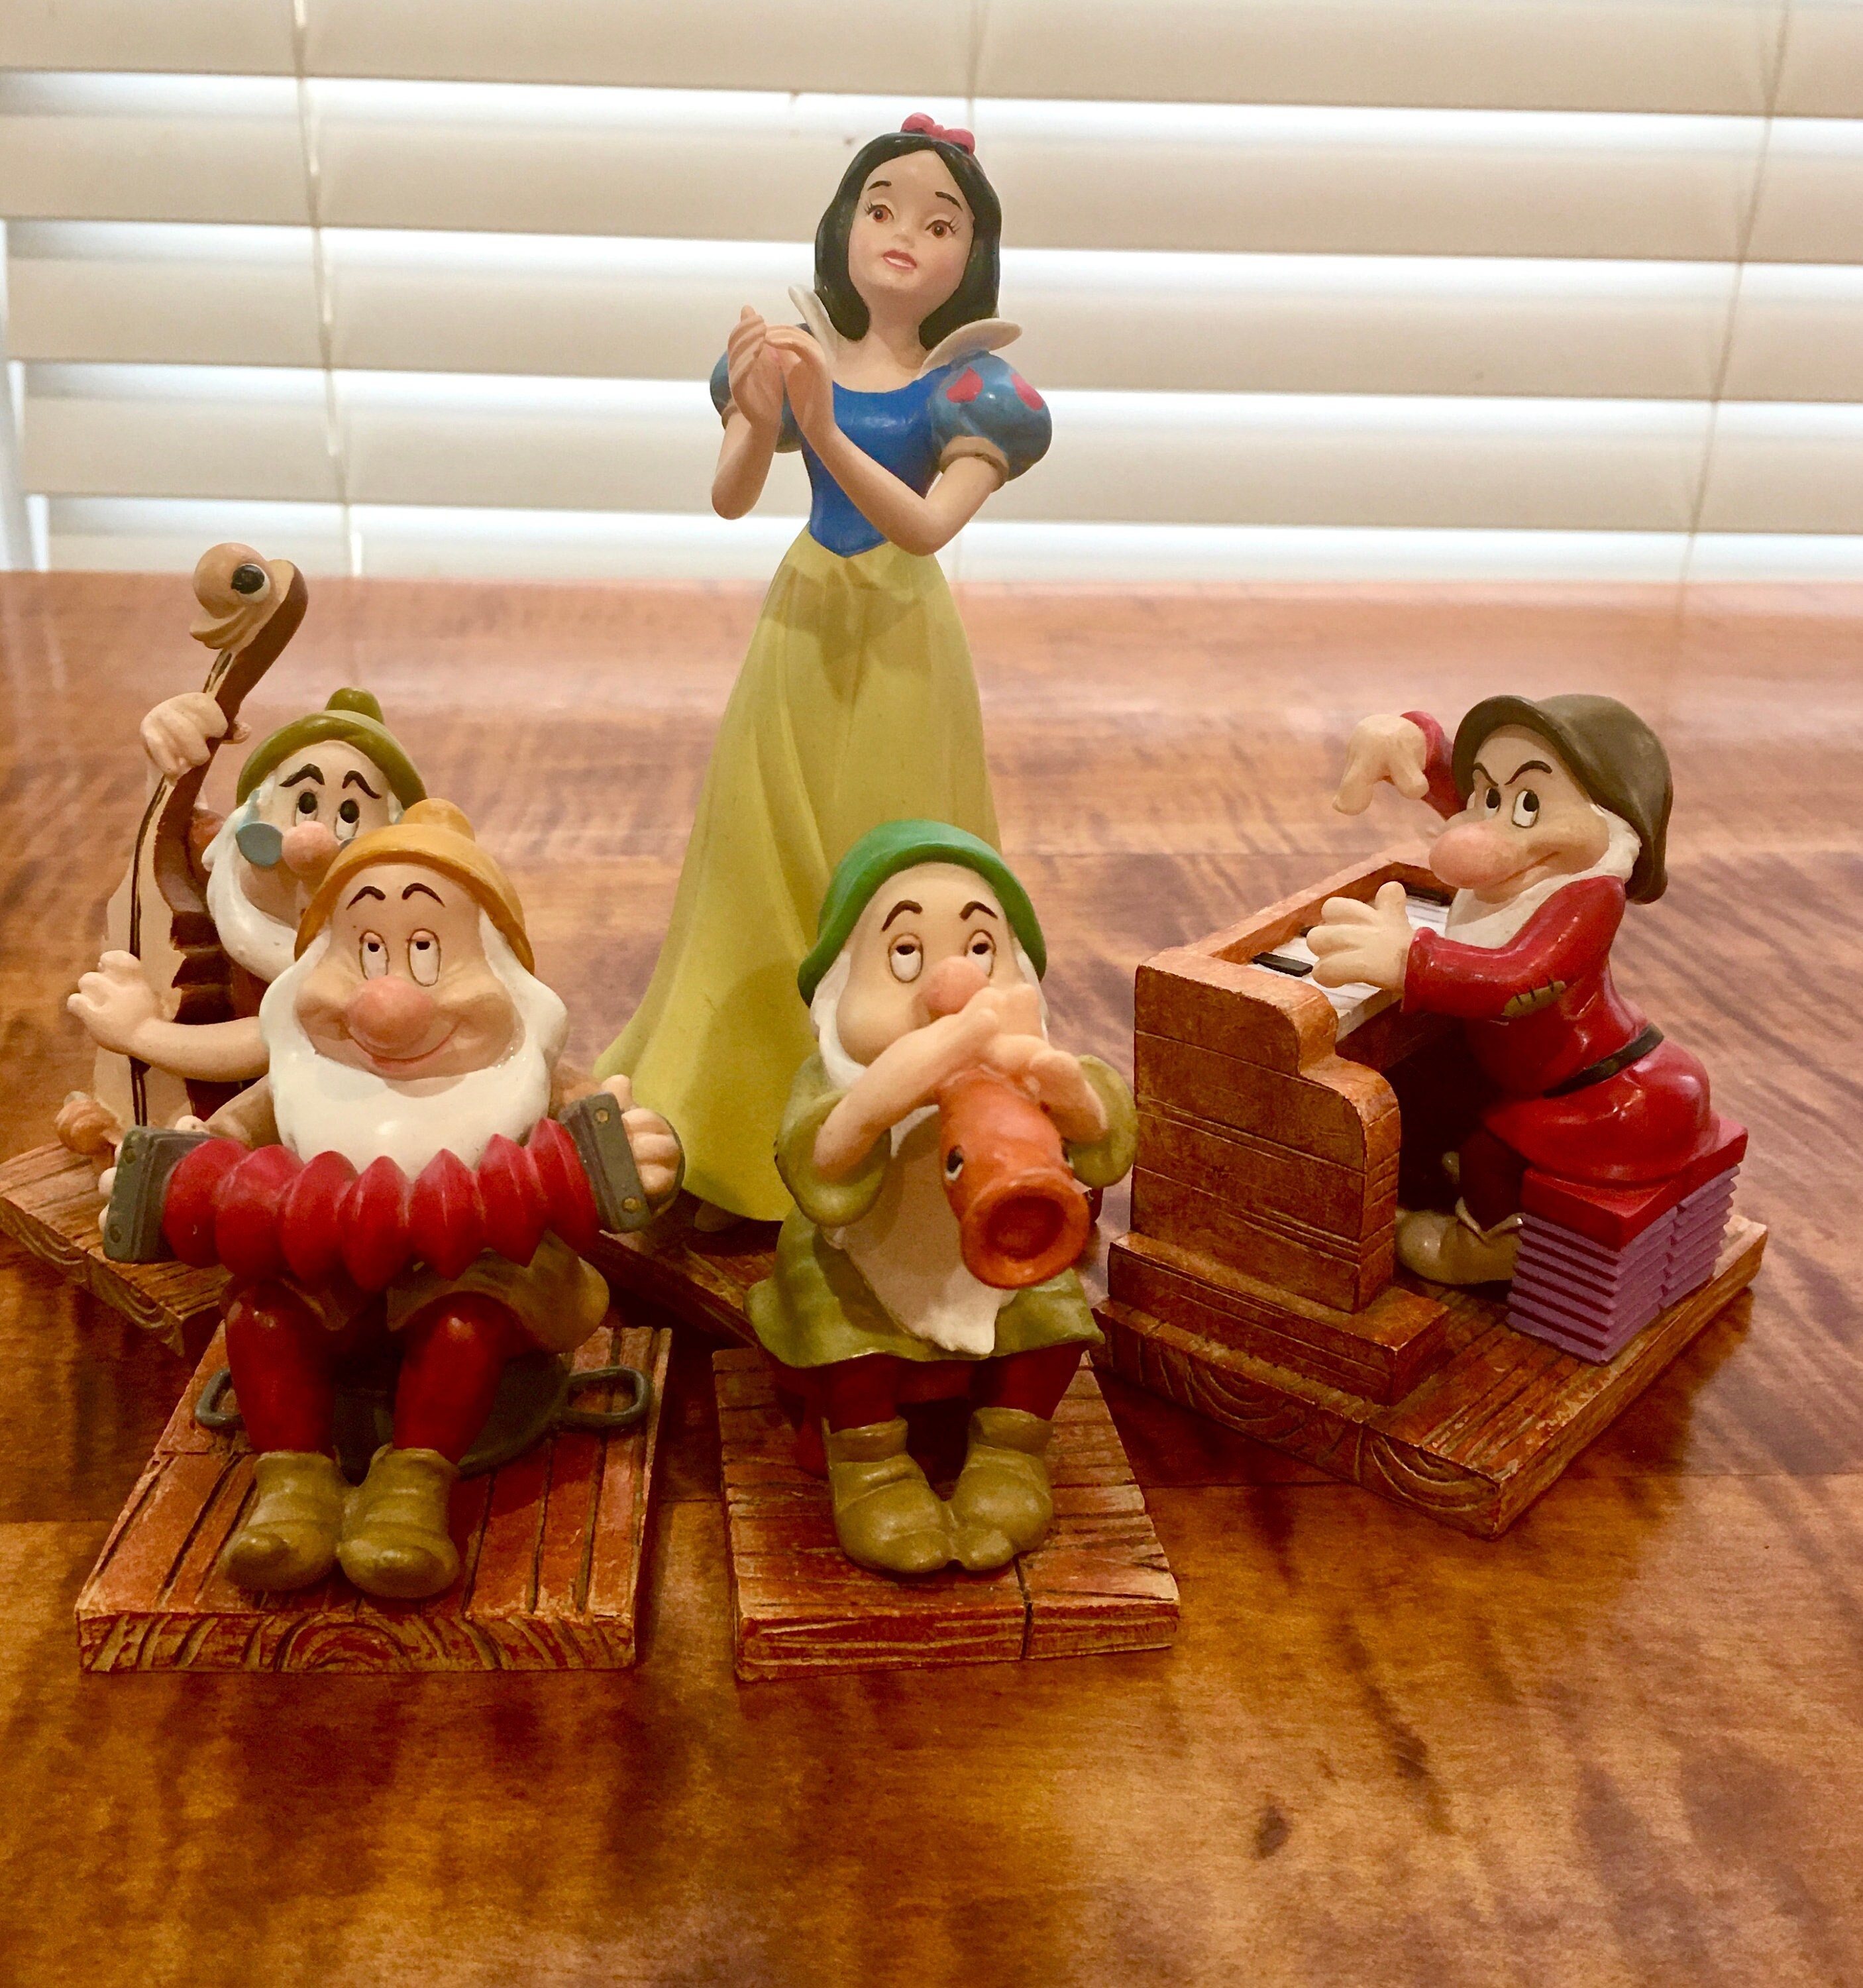 Enesco Disney Showcase Rococo Princess Snow White Figurine 8.25 Inch 6010295